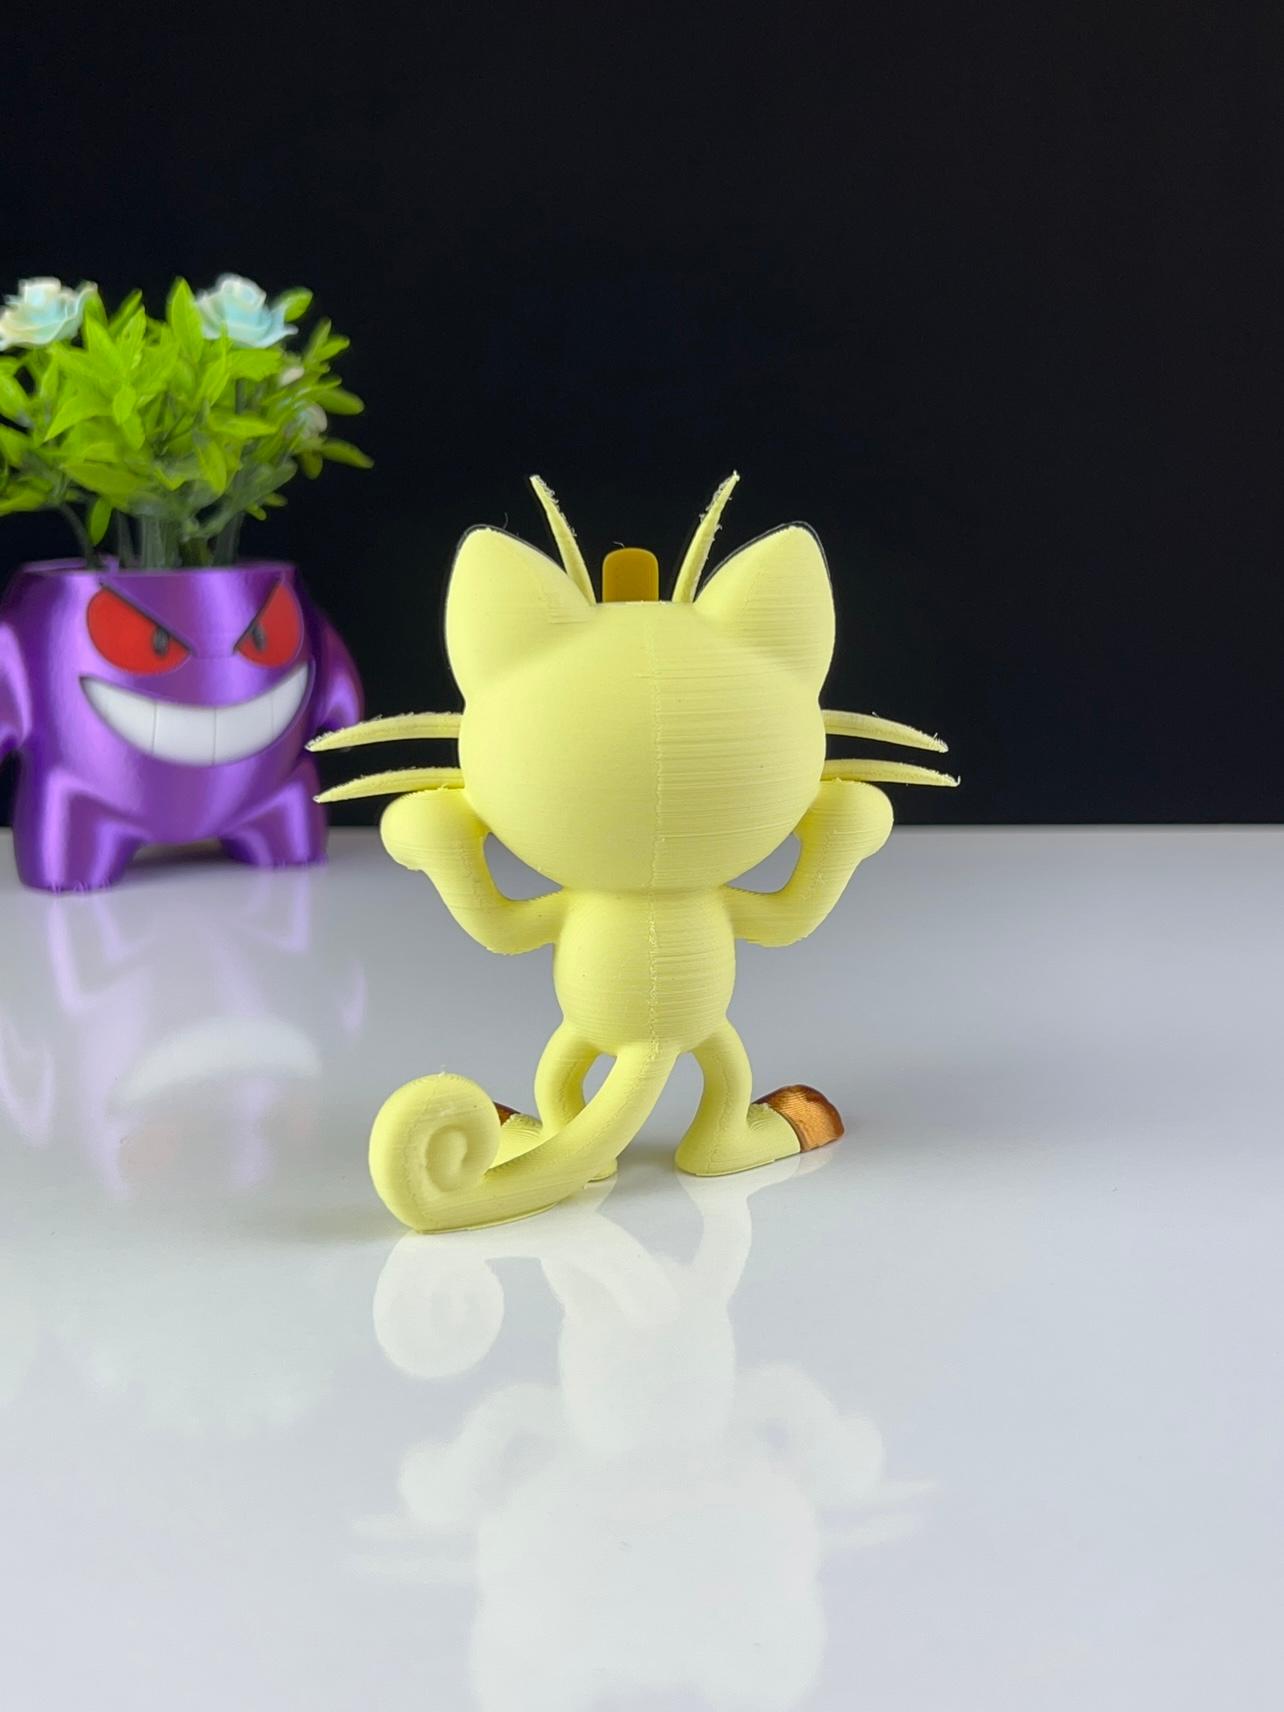 Meowth single color  3d model